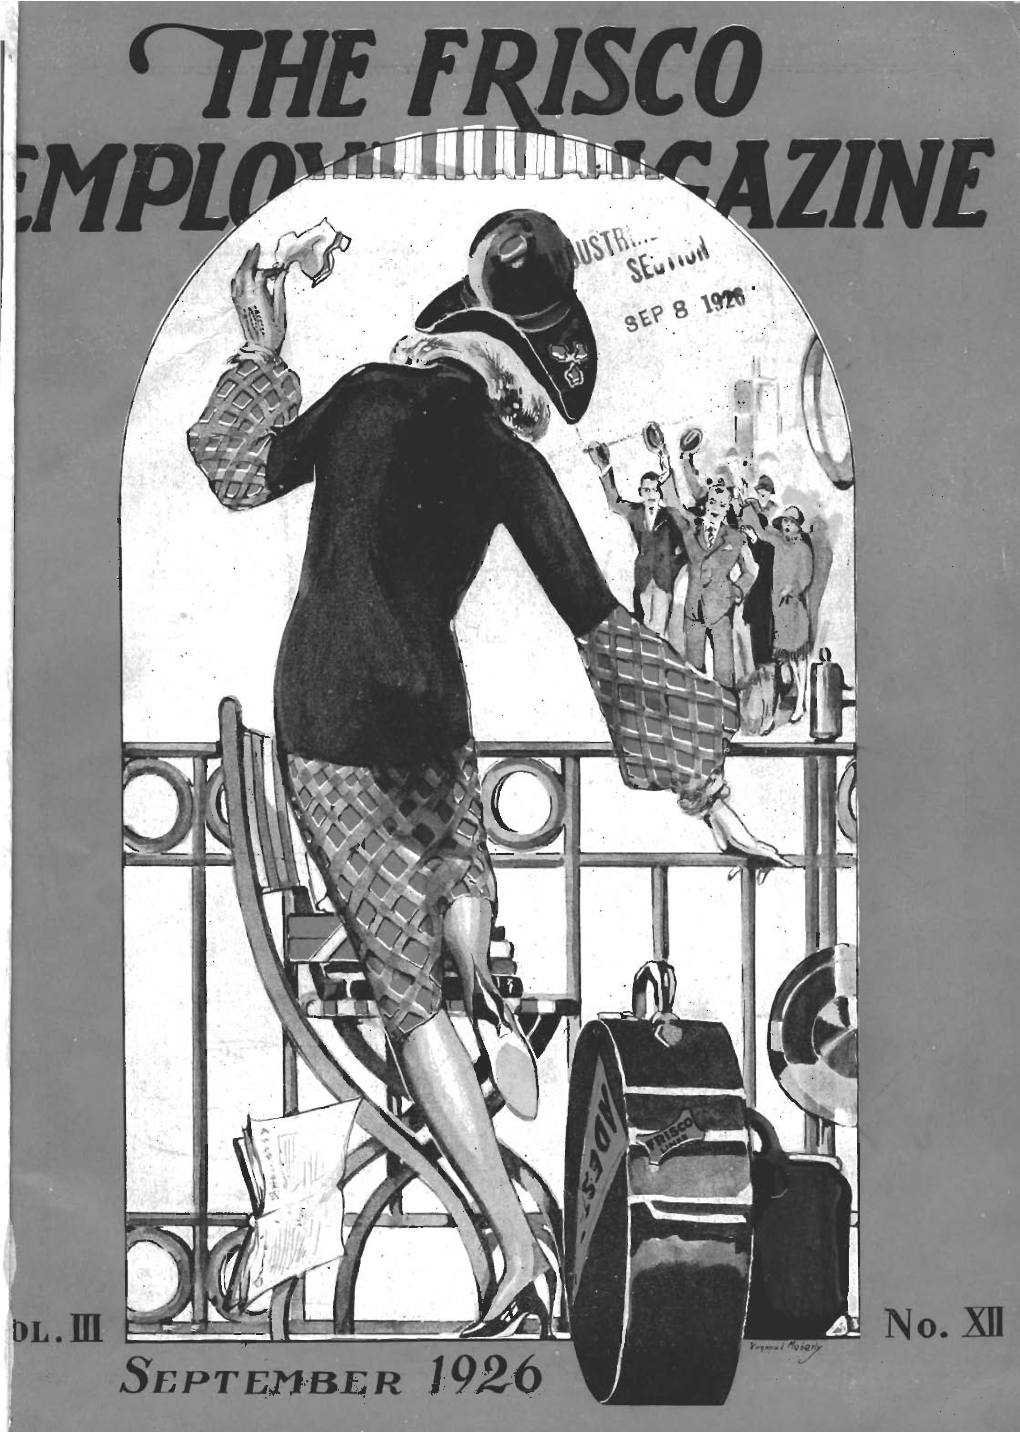 The Frisco Employes' Magazine, September 1926